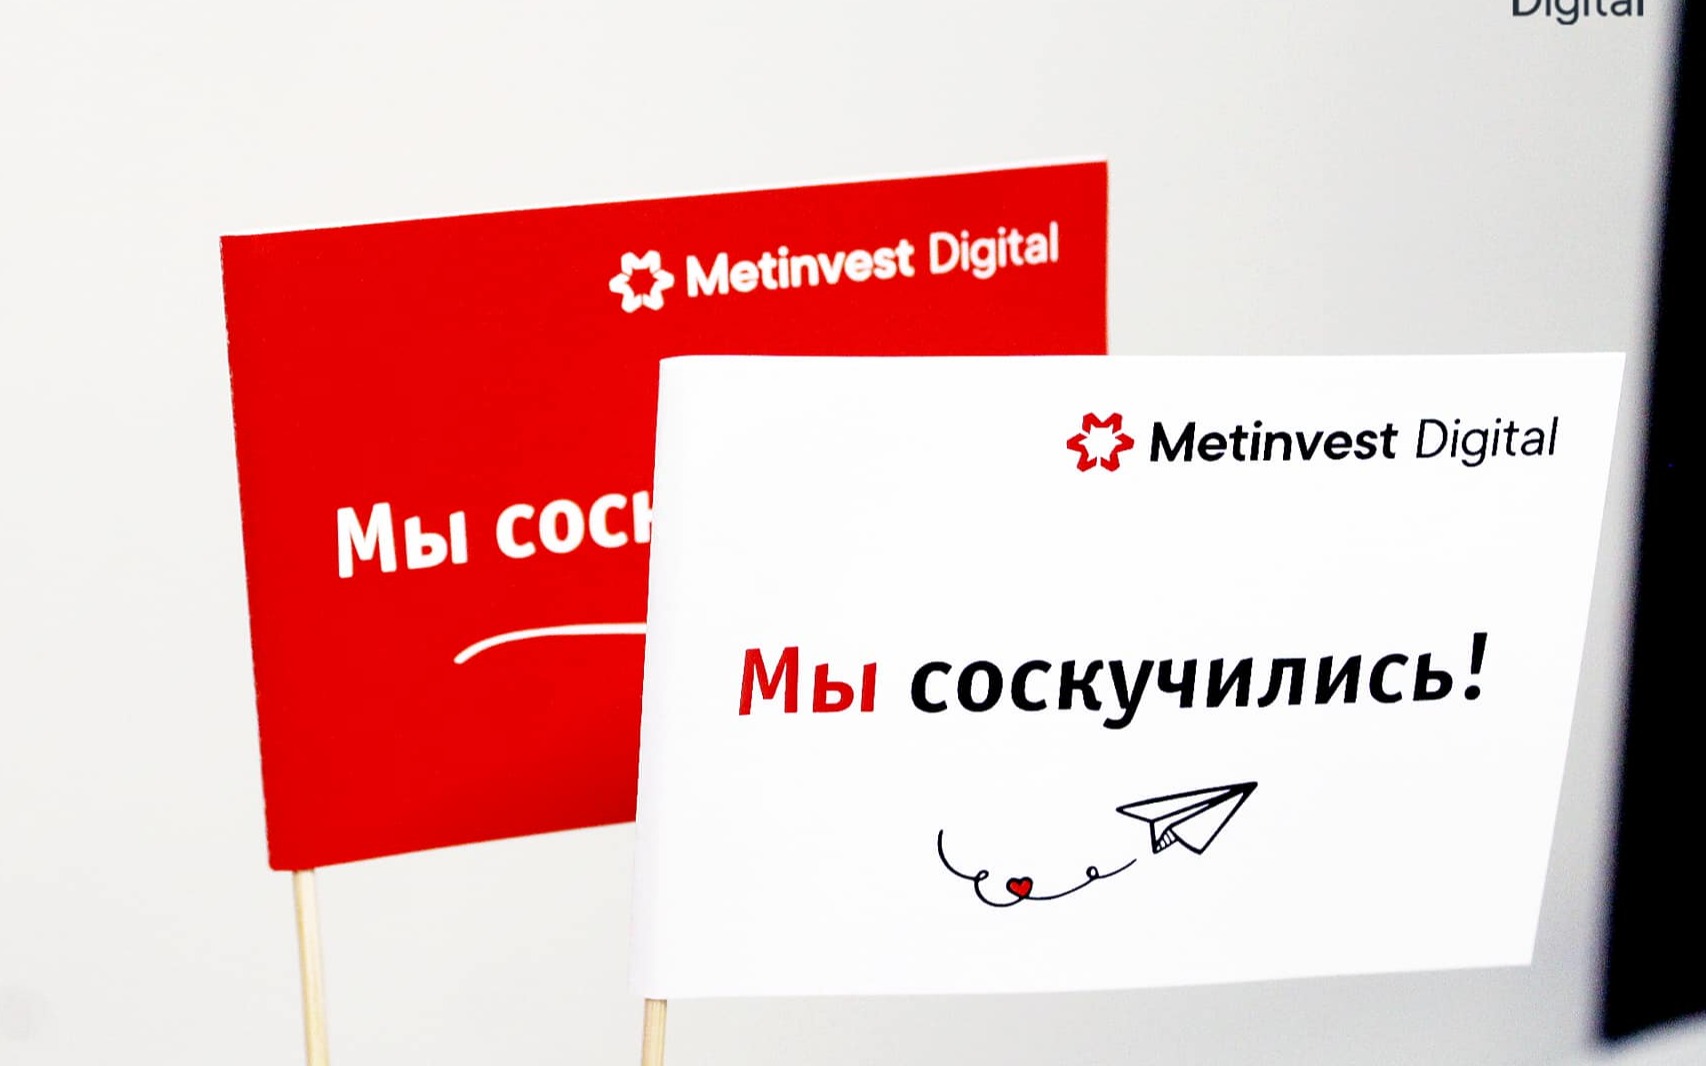 Metinvest Digital — вакансия в Руководитель обучения IT пользователей: фото 7